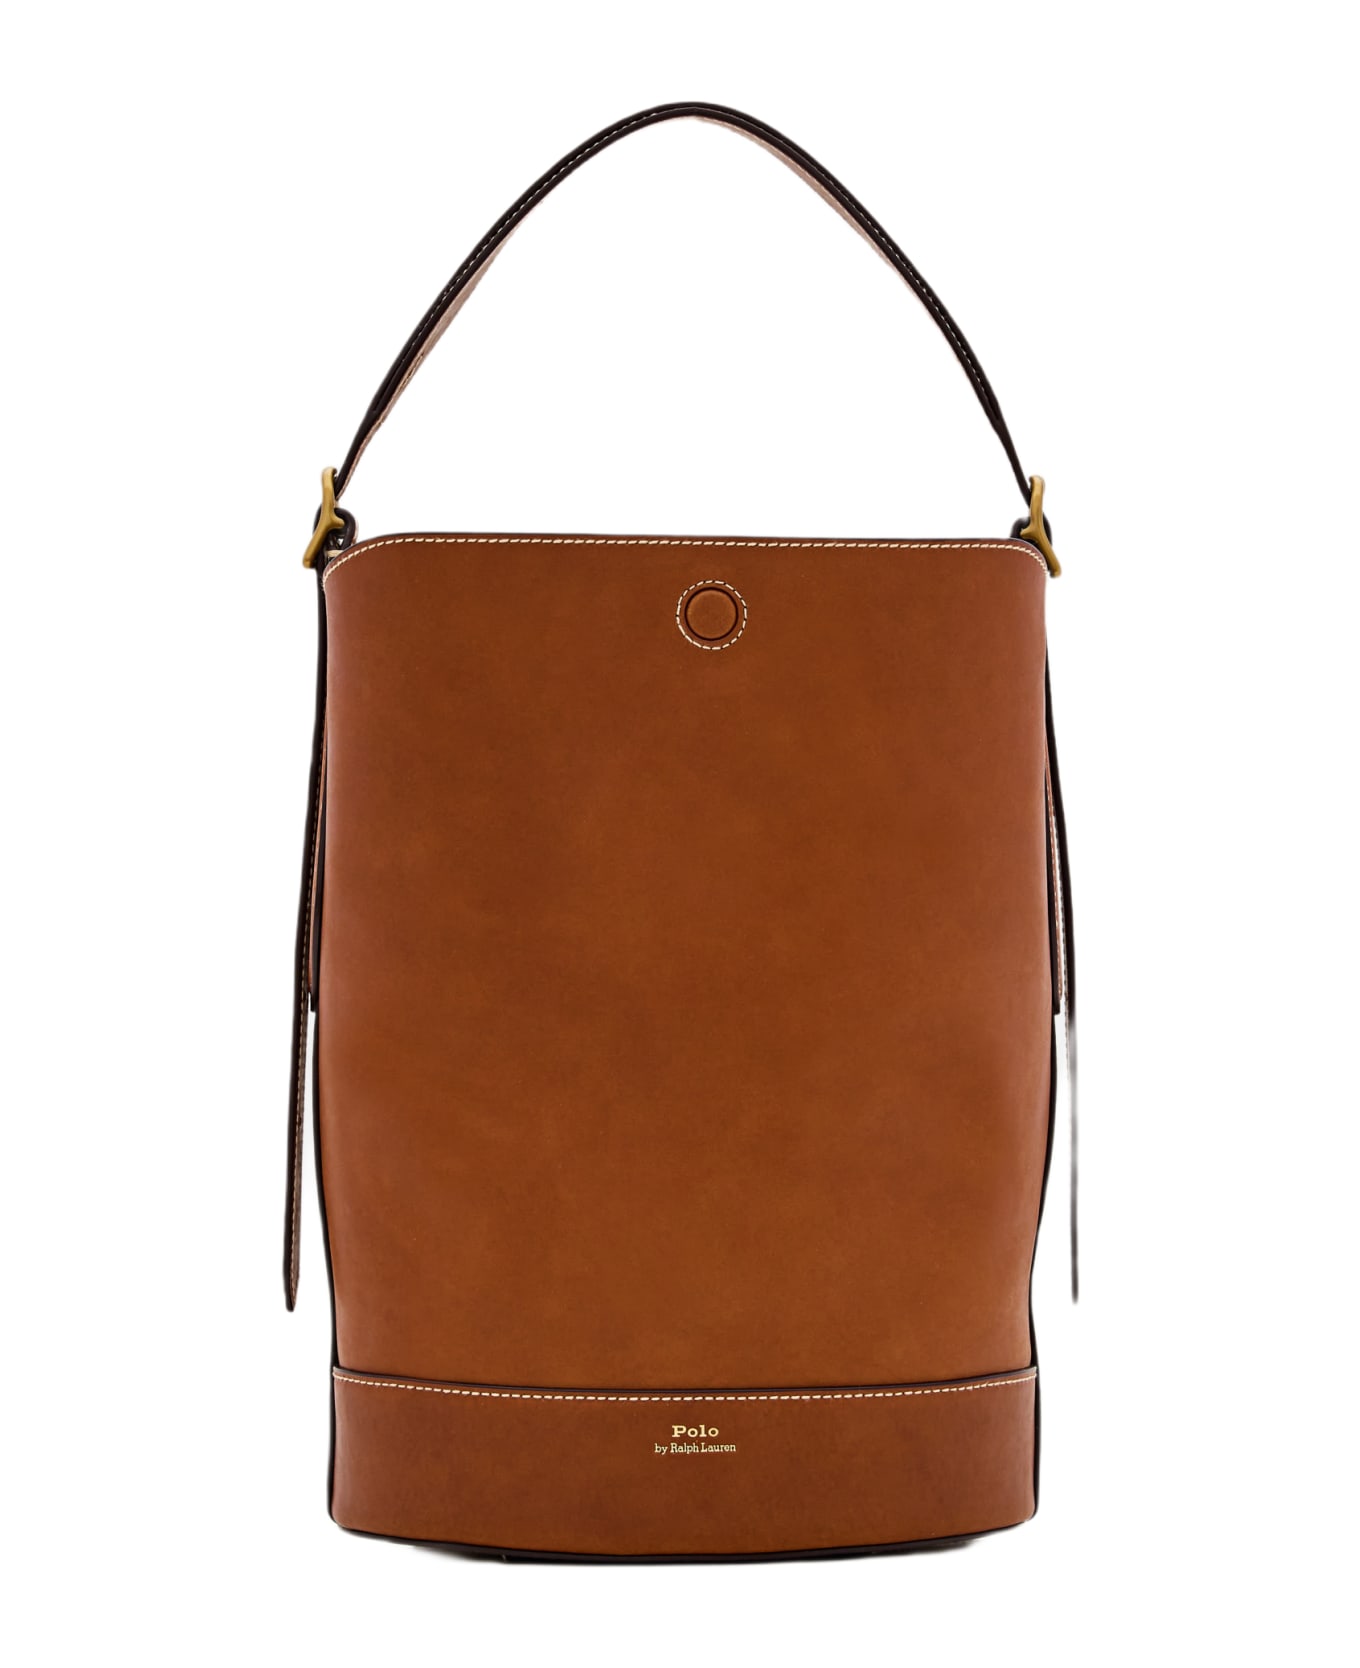 Polo Ralph Lauren Medium Bucket Leather Shoulder Bag - Brown トートバッグ